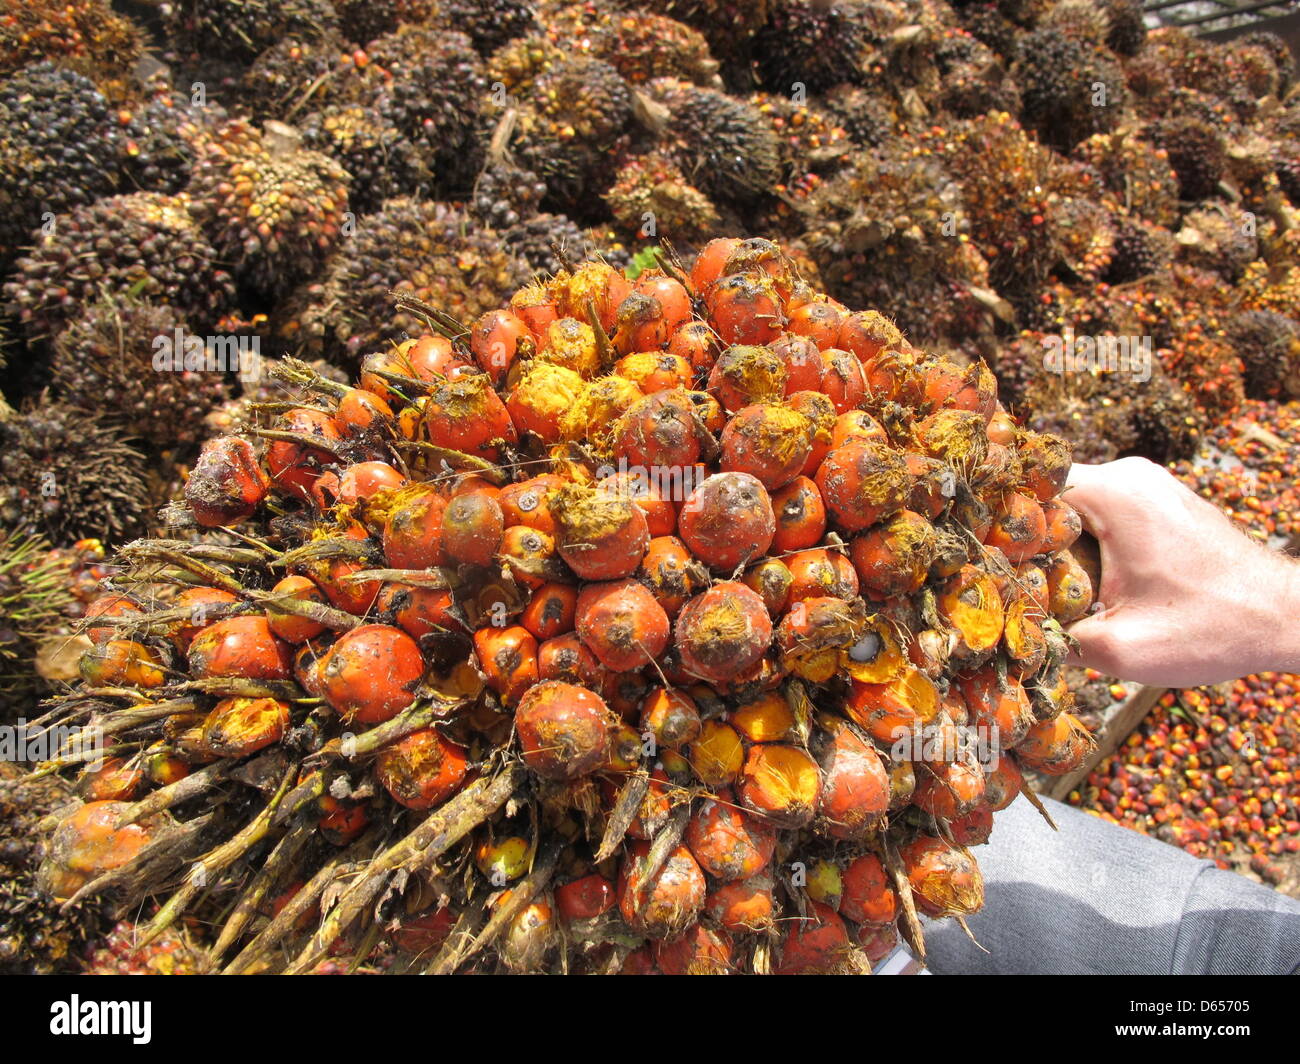 Eine Palmöl-Obst-Reihe wird in Playpraya in der Provinz Krabi, Thailand, 29. Mai 2012 präsentiert. Palmöl ist das produktivste Pflanzenöl in der Welt. Ein Baum wächst rund 15 Fruchtstände jährlich mit Dutzenden von einzelnen Palmöl Früchte. Öl wird aus dem Fruchtfleisch gewonnen. Die Kerne sind separat gepresst, um noch wertvoller Palmkernöl zu produzieren. Foto: Christiane Stockfoto